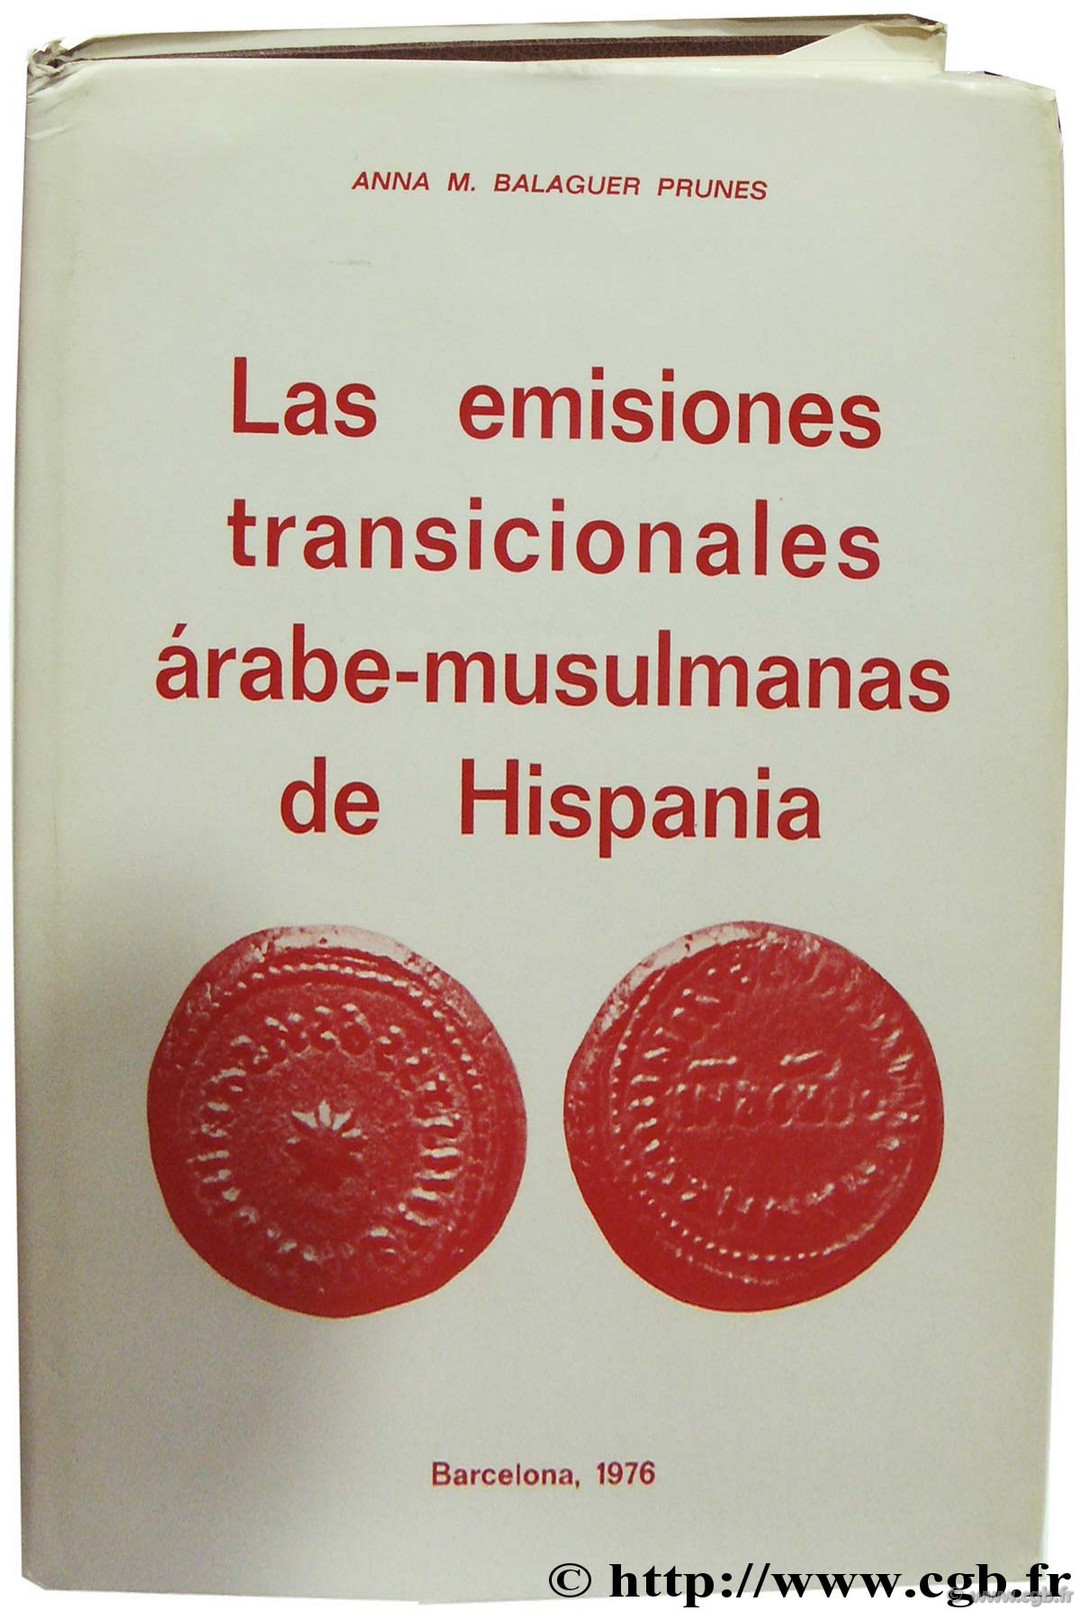 Las emisiones transicionales arabe-musulmanas de Hispania BALAGUER PRUNES A.-M.